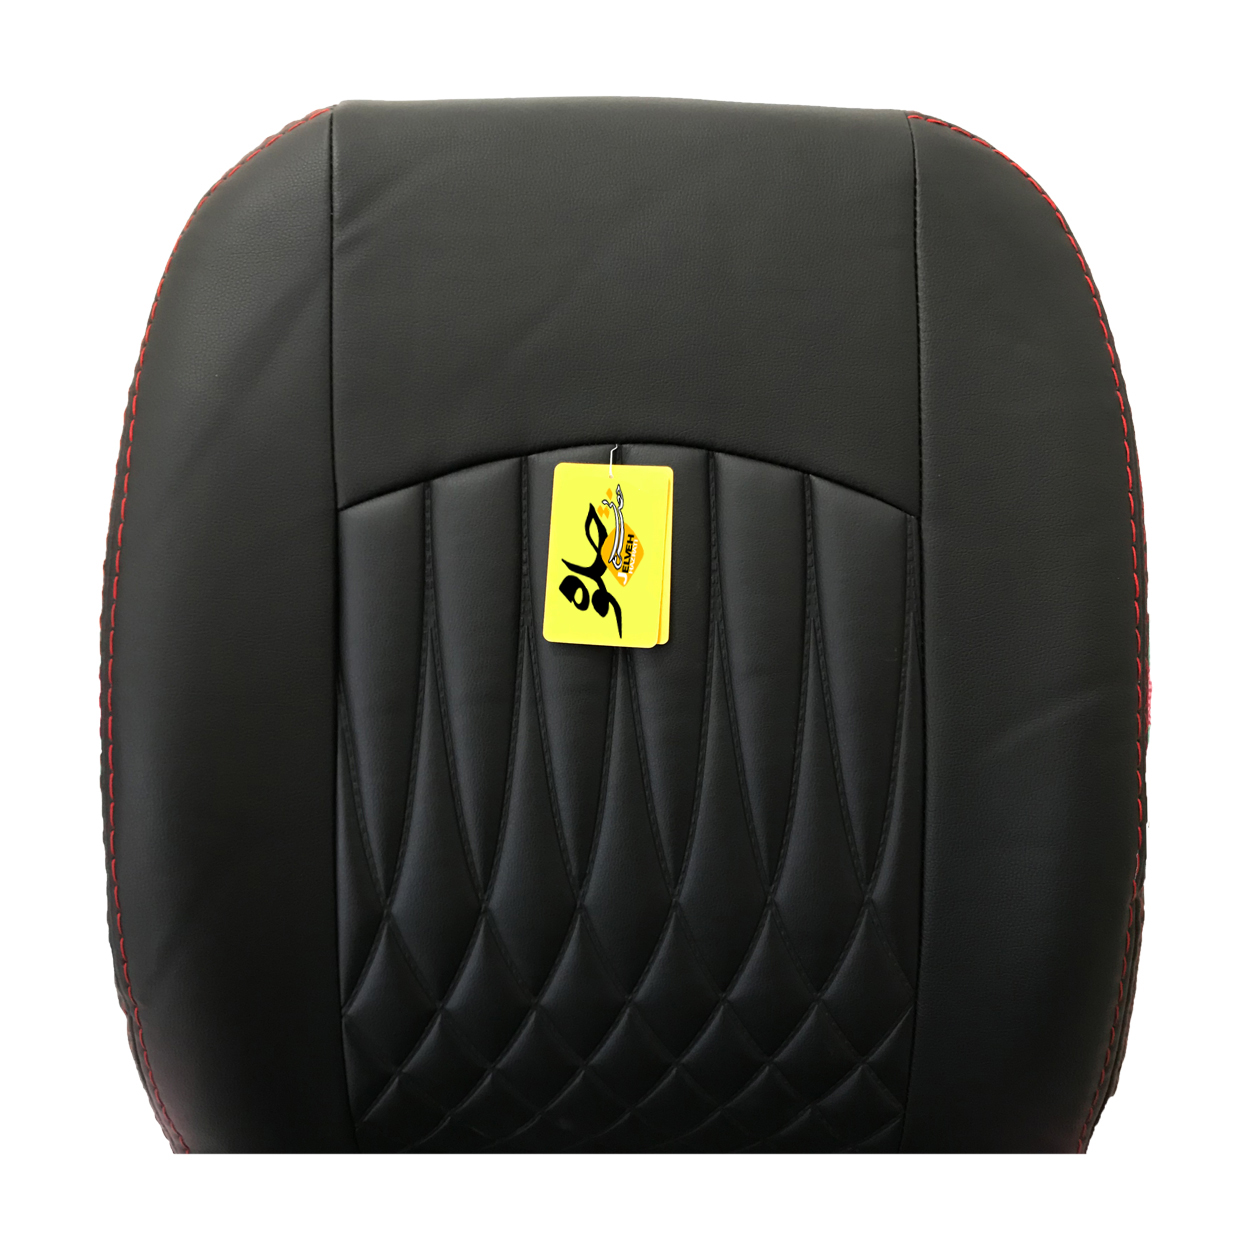 روکش صندلی خودرو جلوه مدل bg12 مناسب برای ساینا